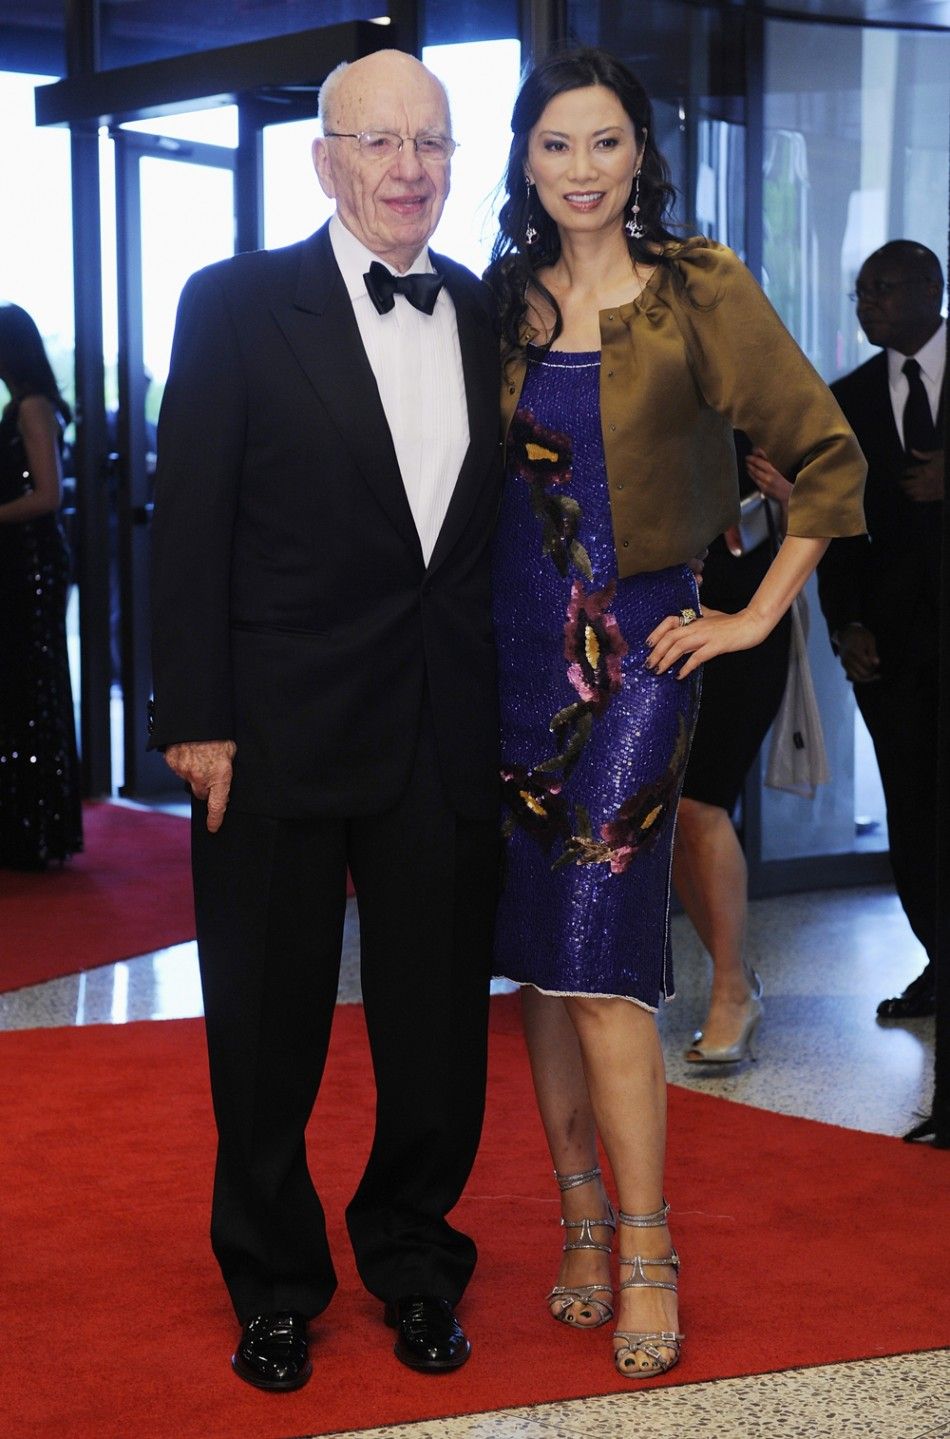 Rupert Murdoch and his wife Wendi Deng